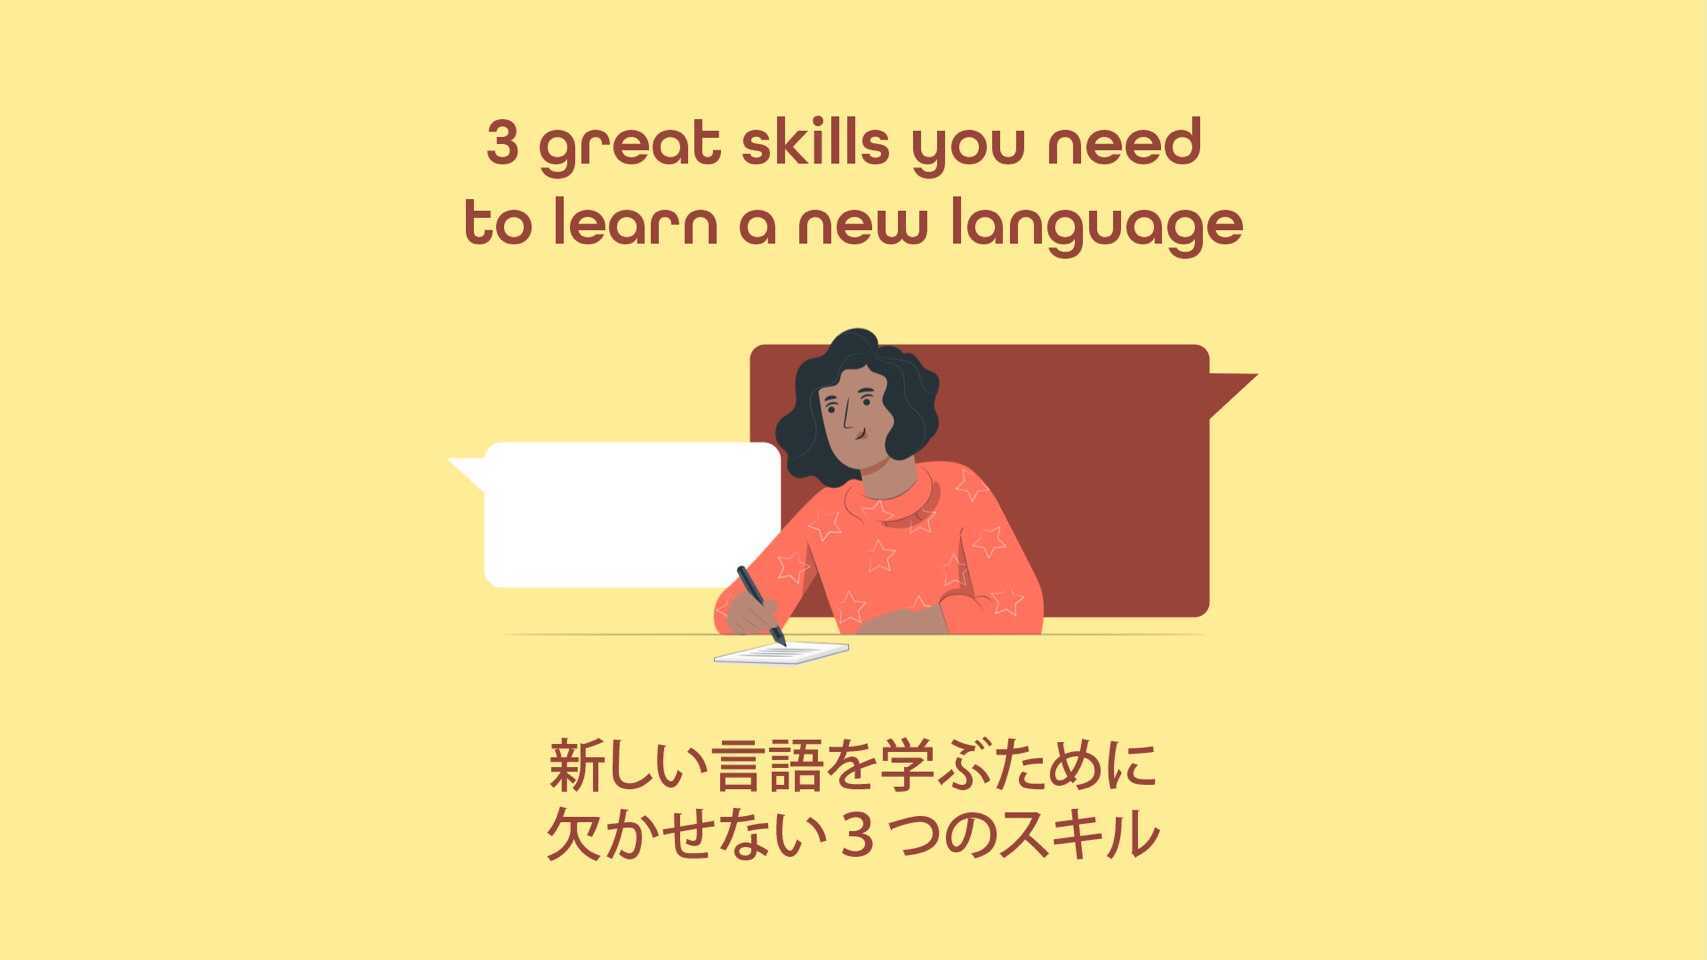 Featured image for “新しく言語を学ぶときに役立つ3つの素晴らしいスキル”